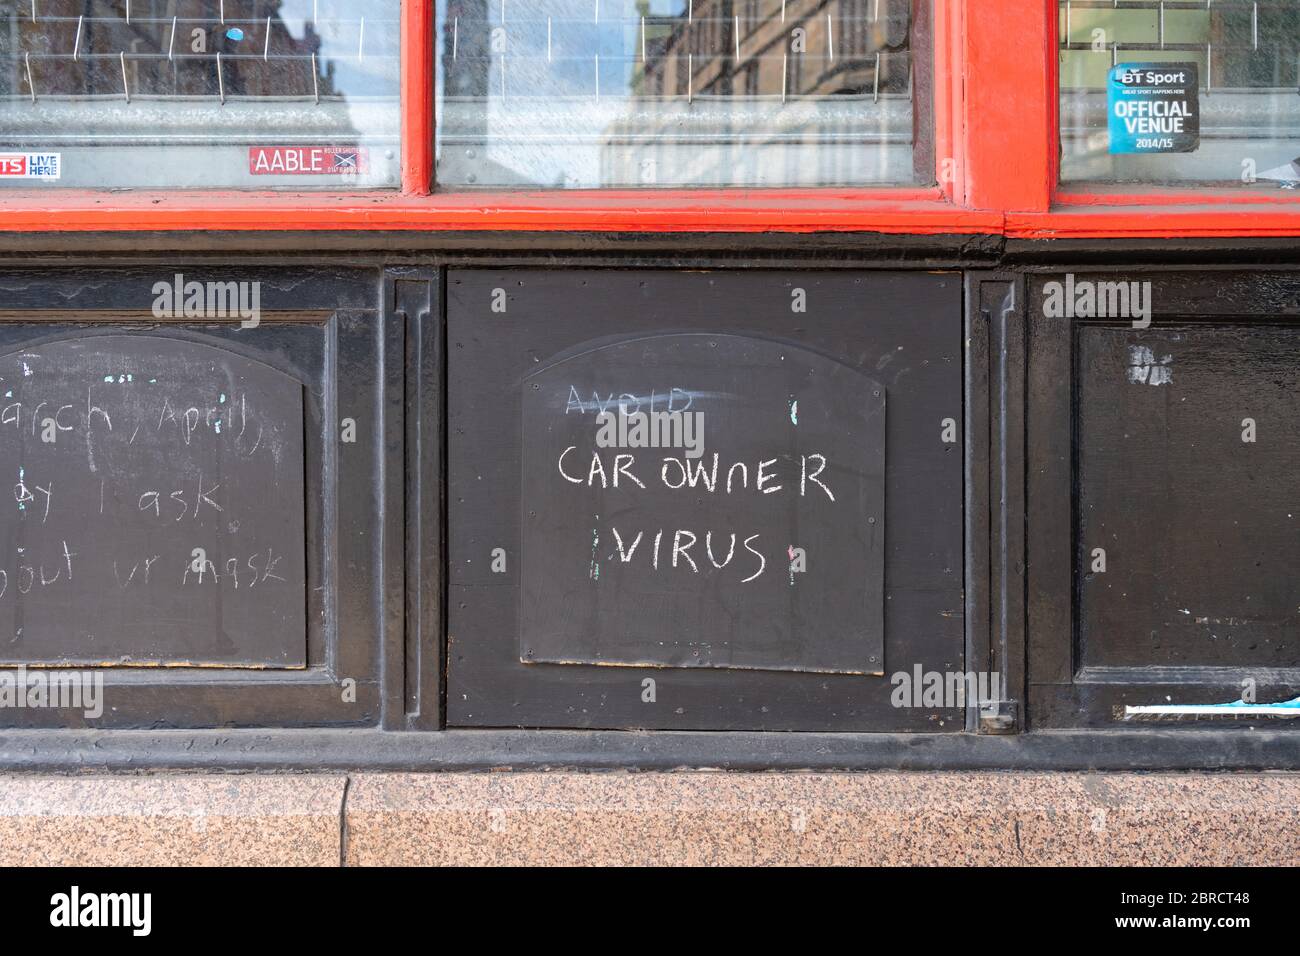 Autobesitzer Virus - Coronavirus spielen auf Worten - Kreide Graffiti - außerhalb Pub in Glasgow, Schottland, Großbritannien Stockfoto